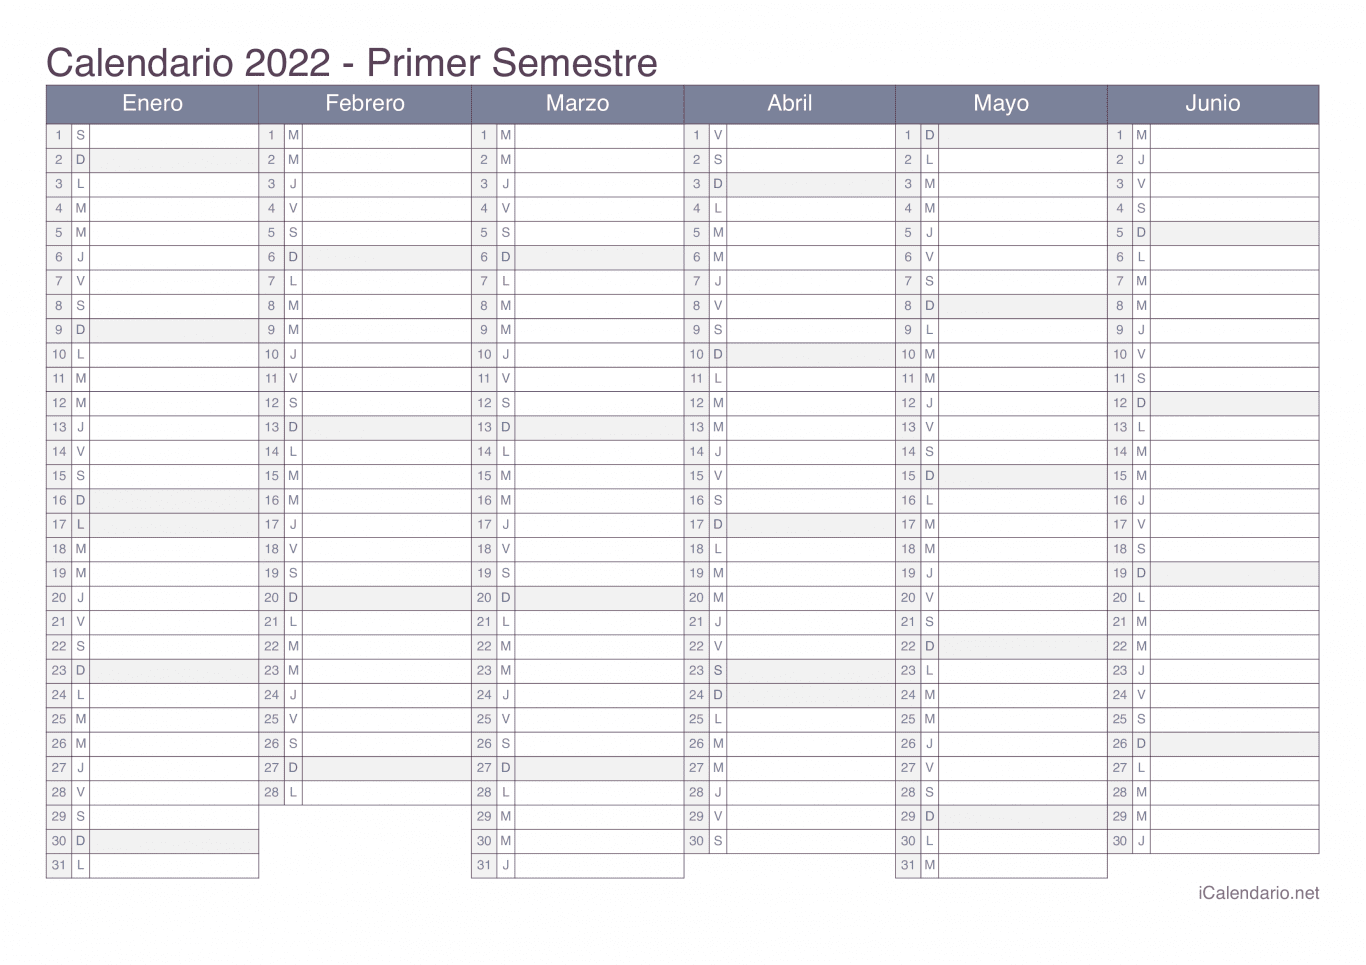 Calendario por semestre 2022 - Office